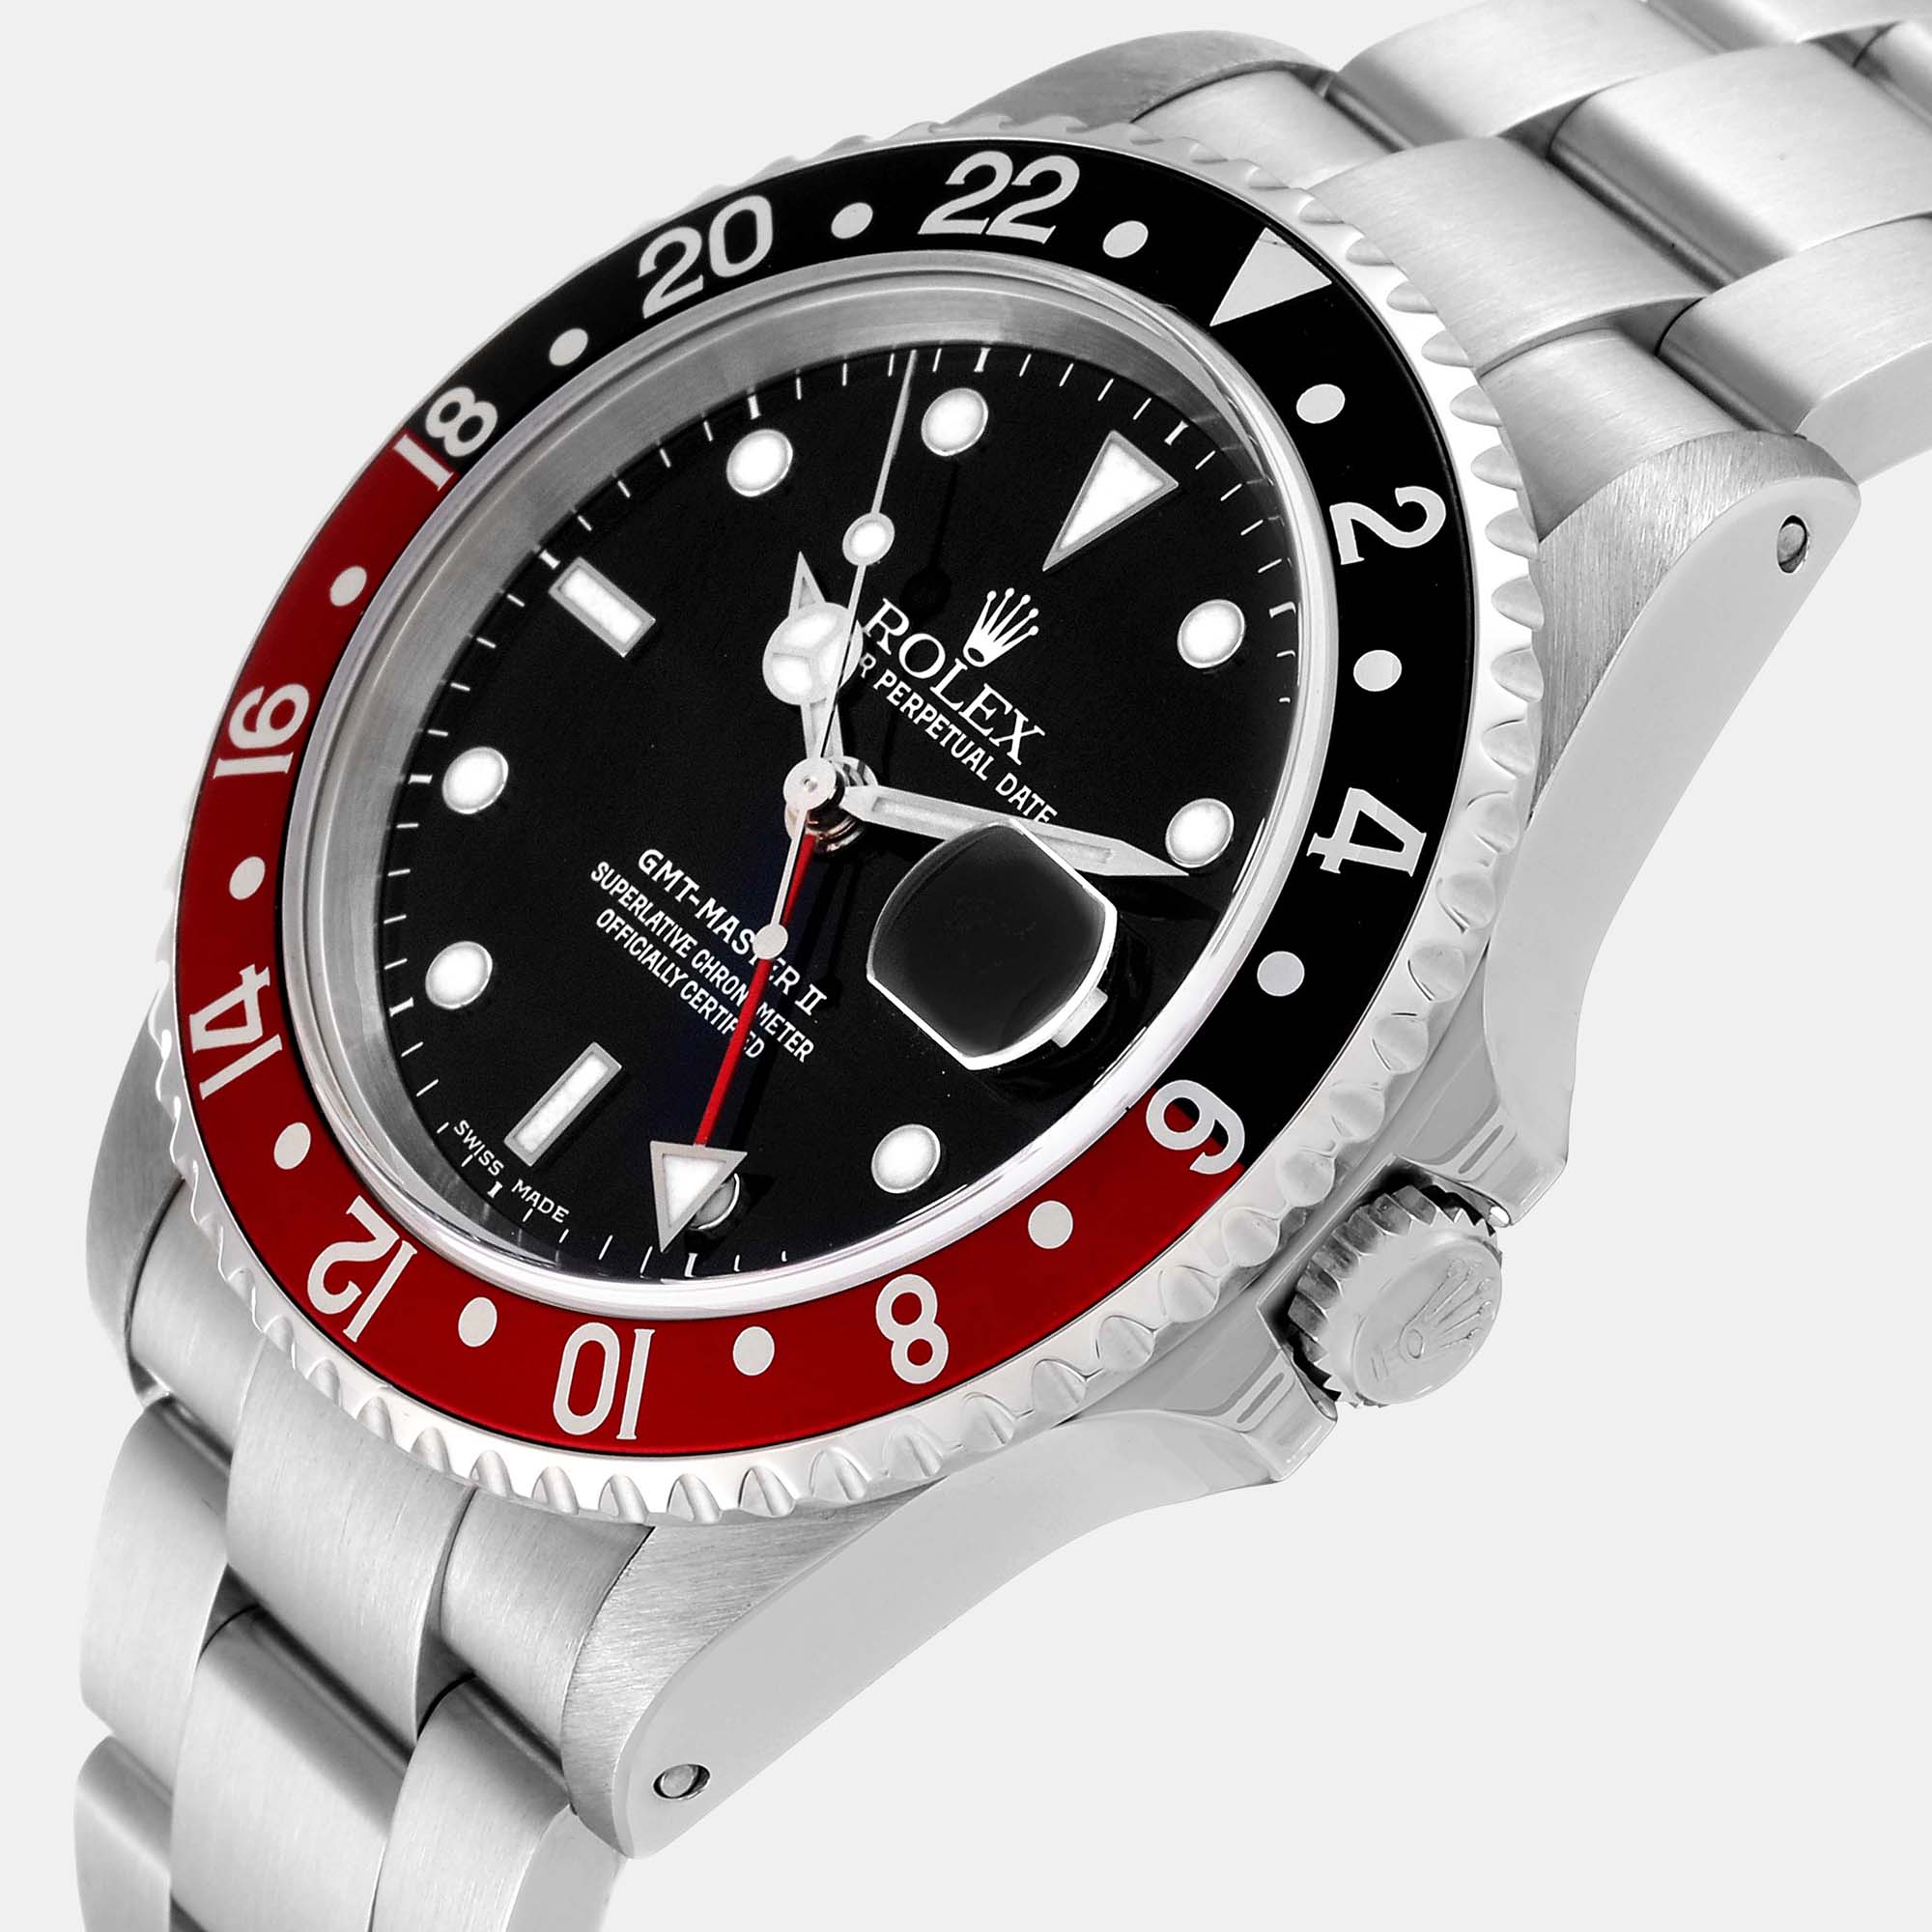 

Rolex GMT Master II Black Red Coke Bezel Steel Men's Watch 16710 40 mm